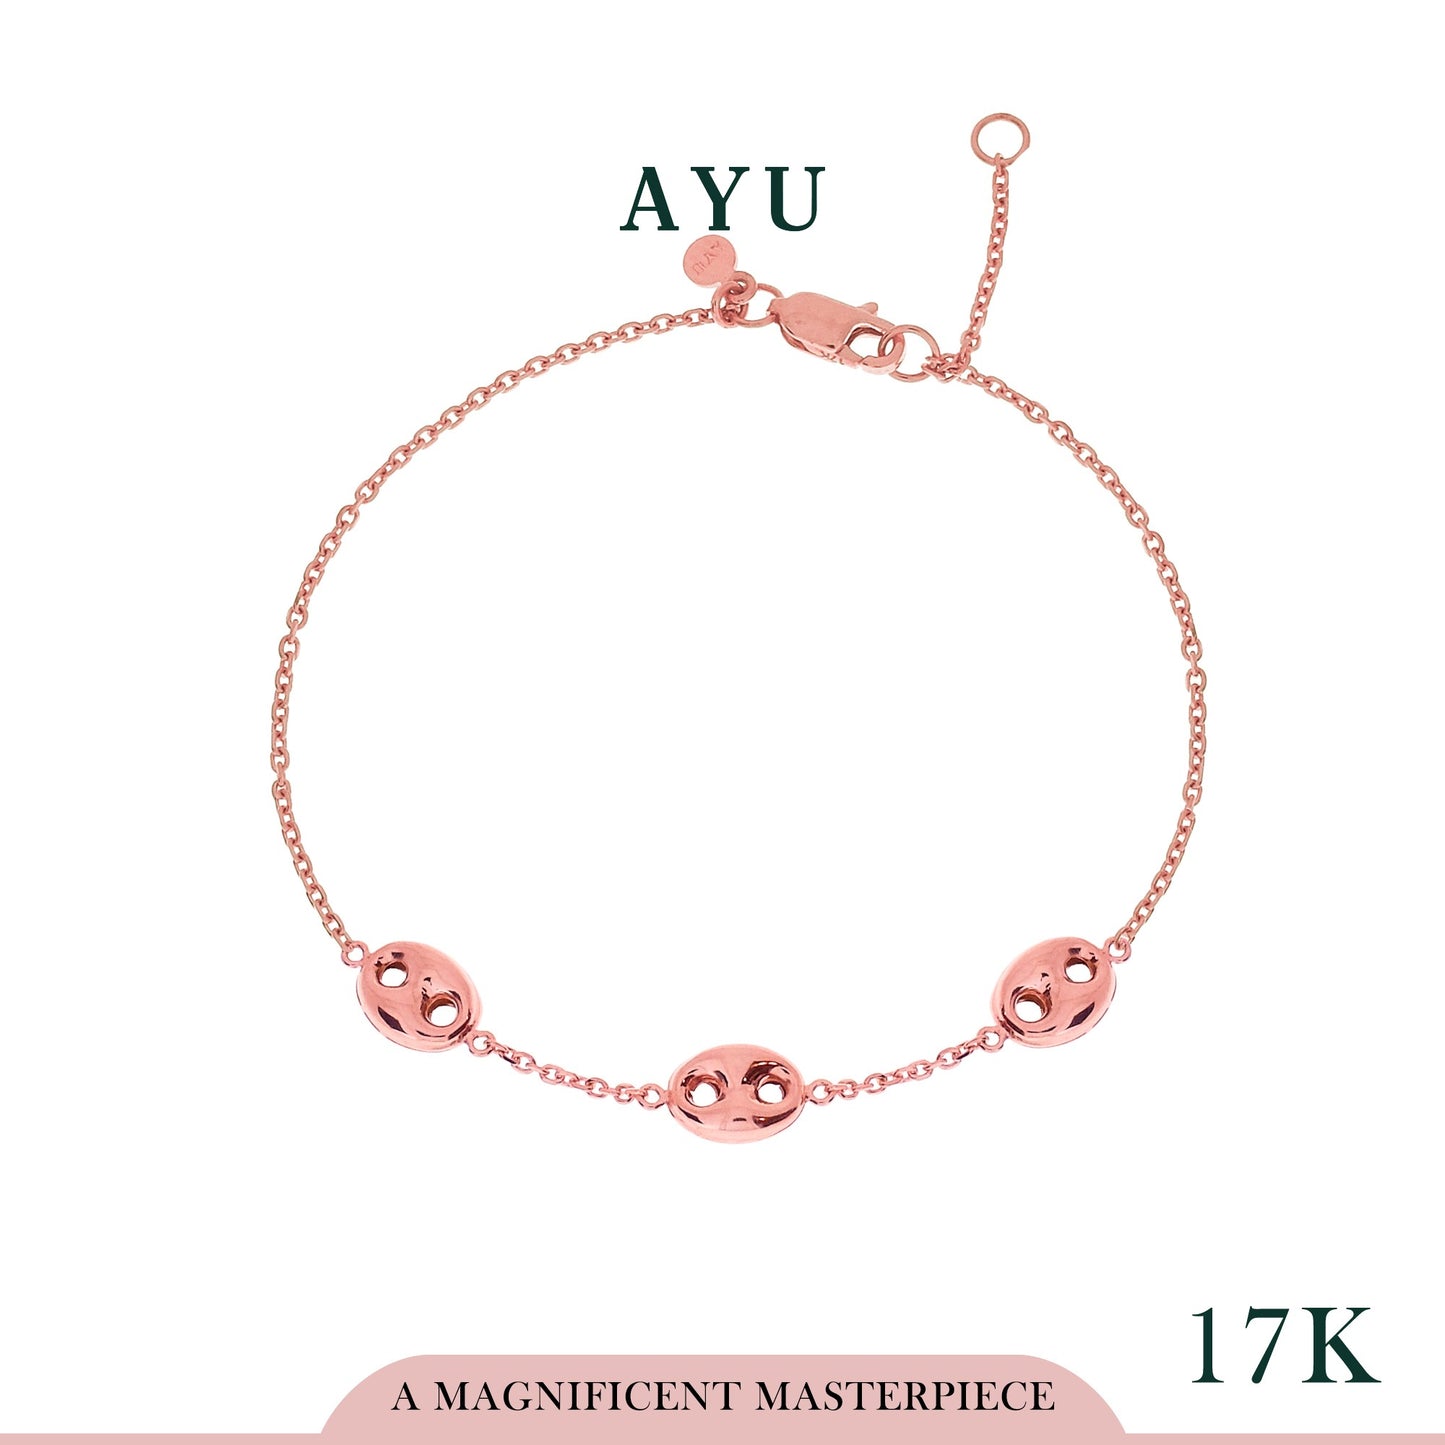 AYU 3 Chubby Oval Link Chain Bracelet 17k Rose Gold